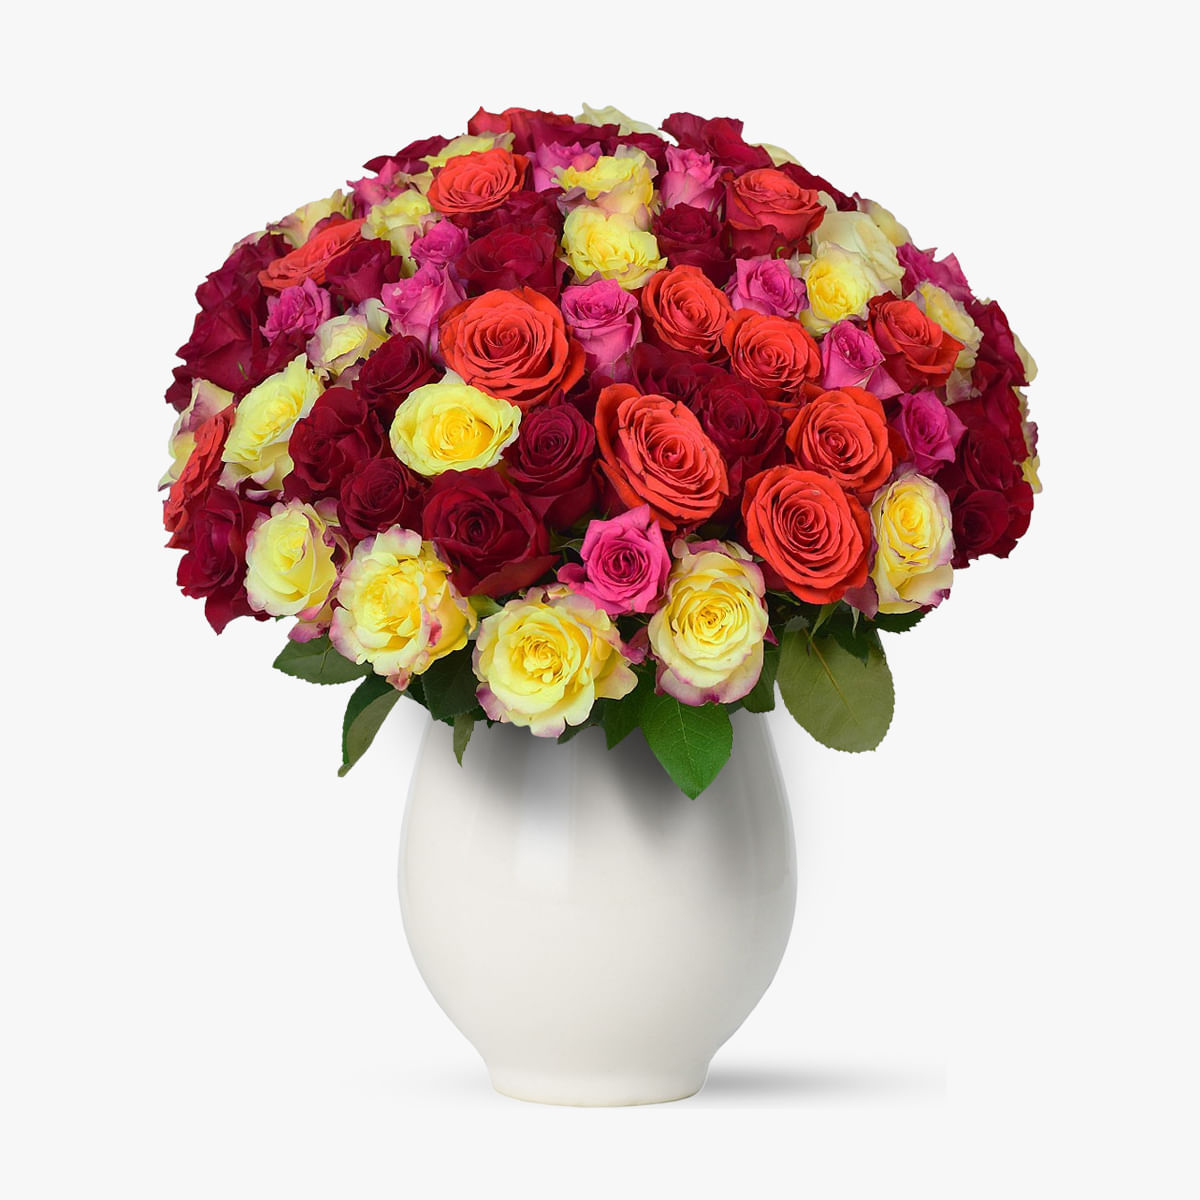 Buchet de 101 trandafiri multicolori – Standard 101